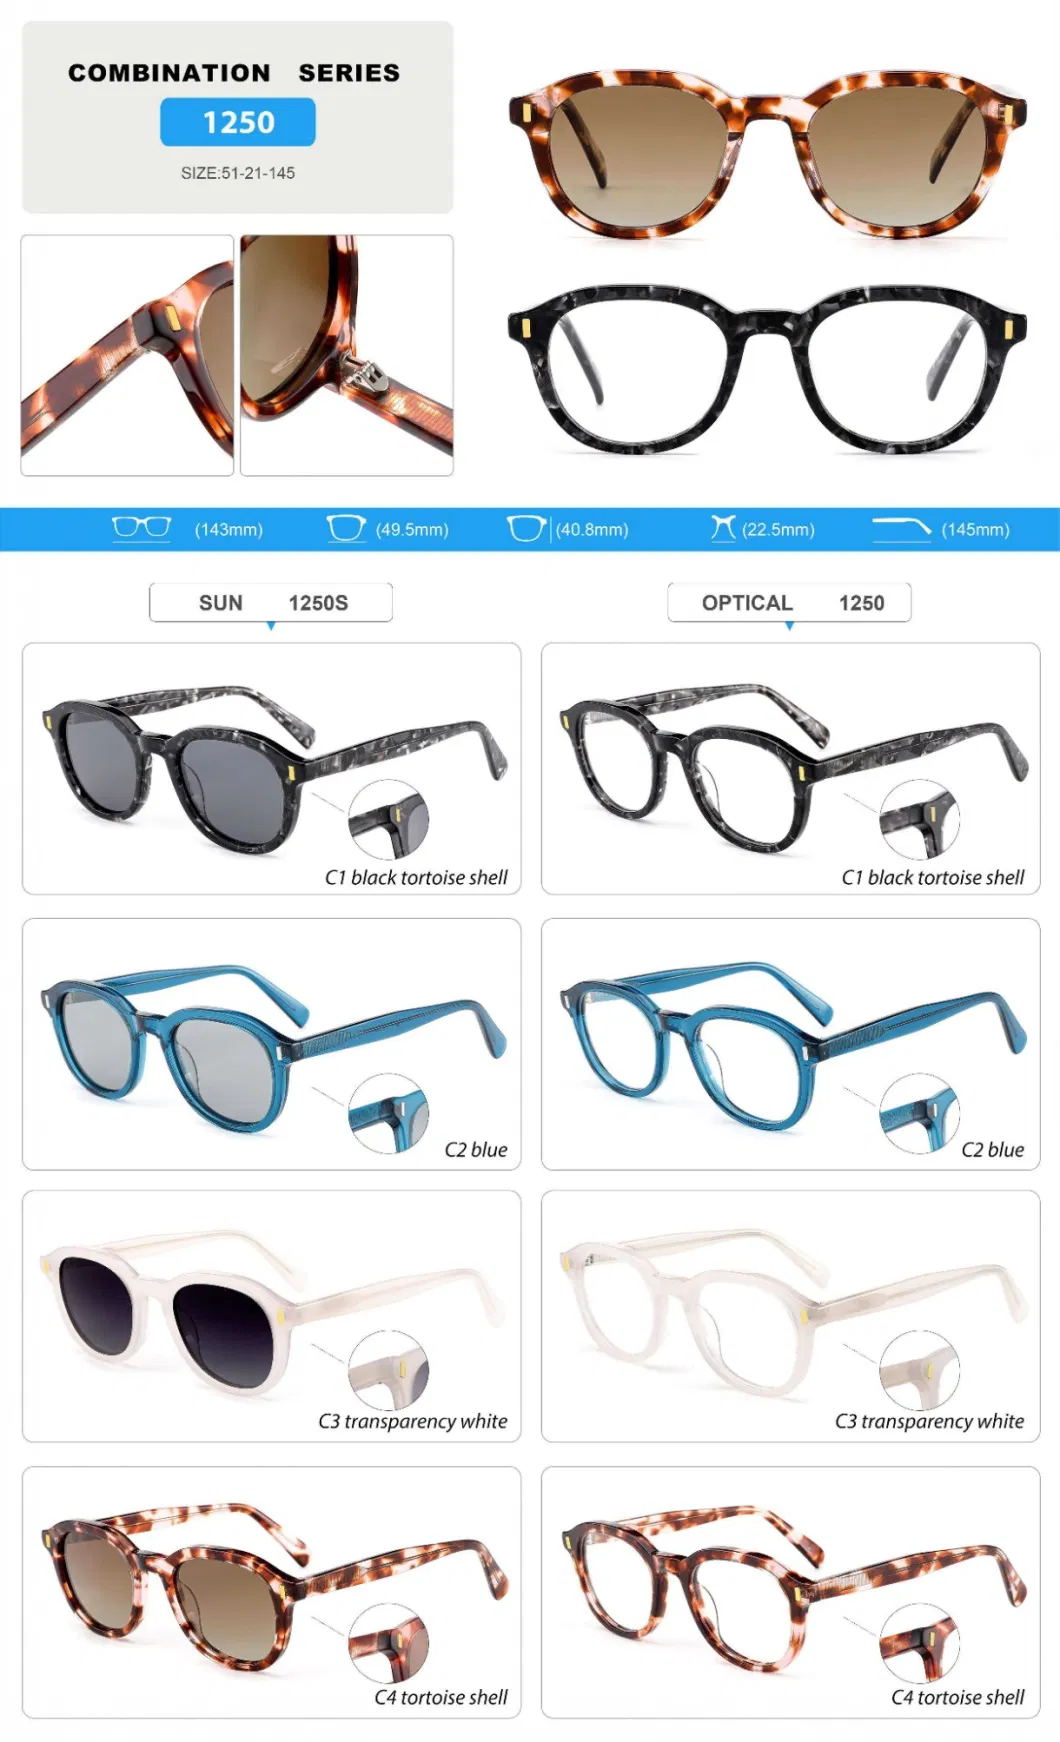 Designer Style Elegant Sun Shades Luxury Combination Acetate Sunglasses for Unisex